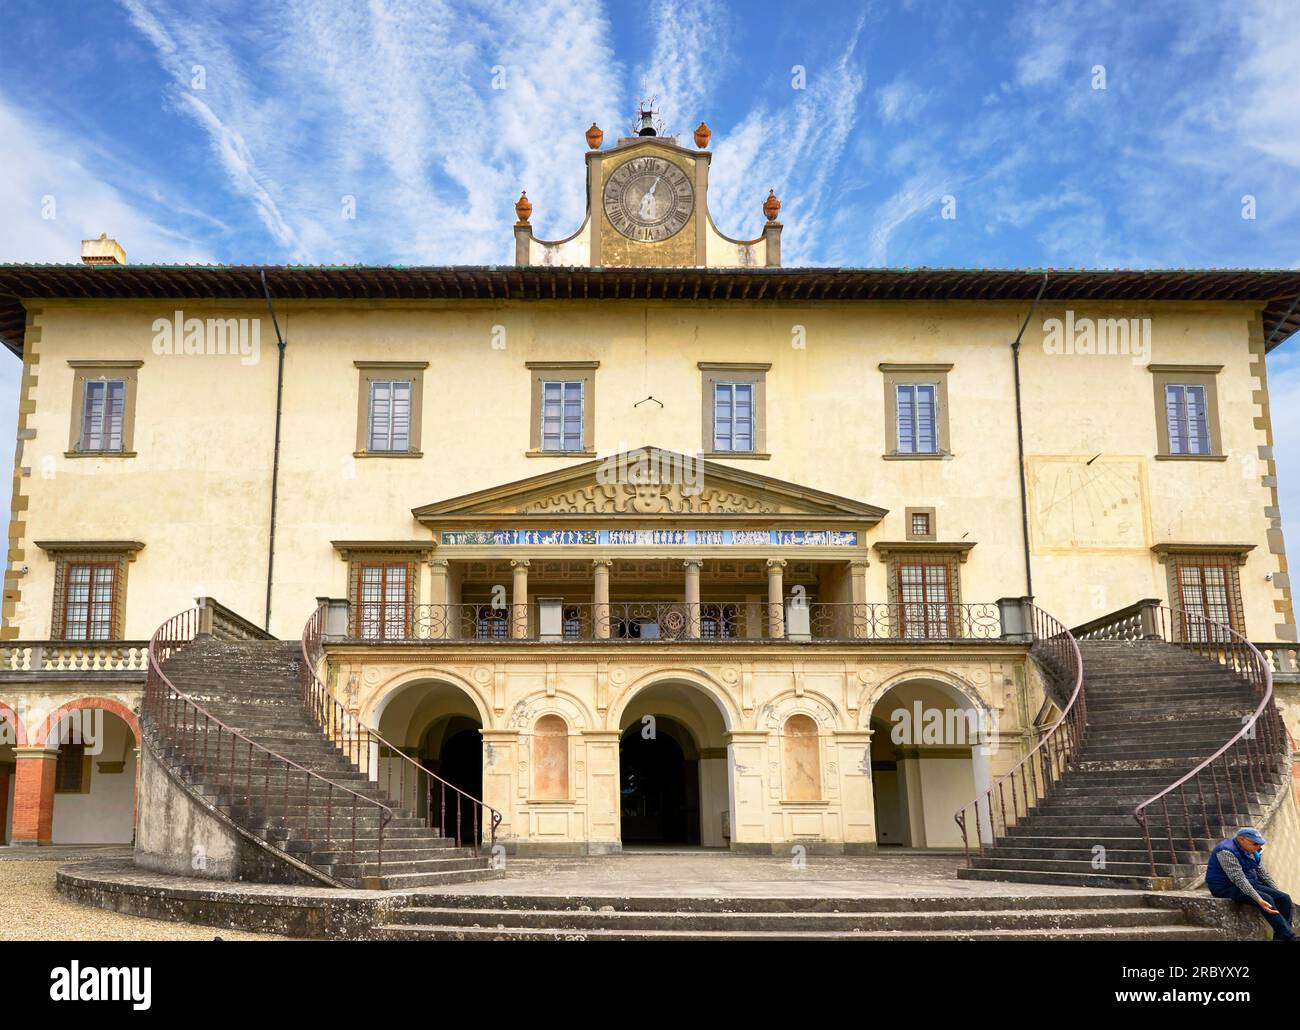 Medici Villa in Poggio a Caiano, Toskana Stockfoto